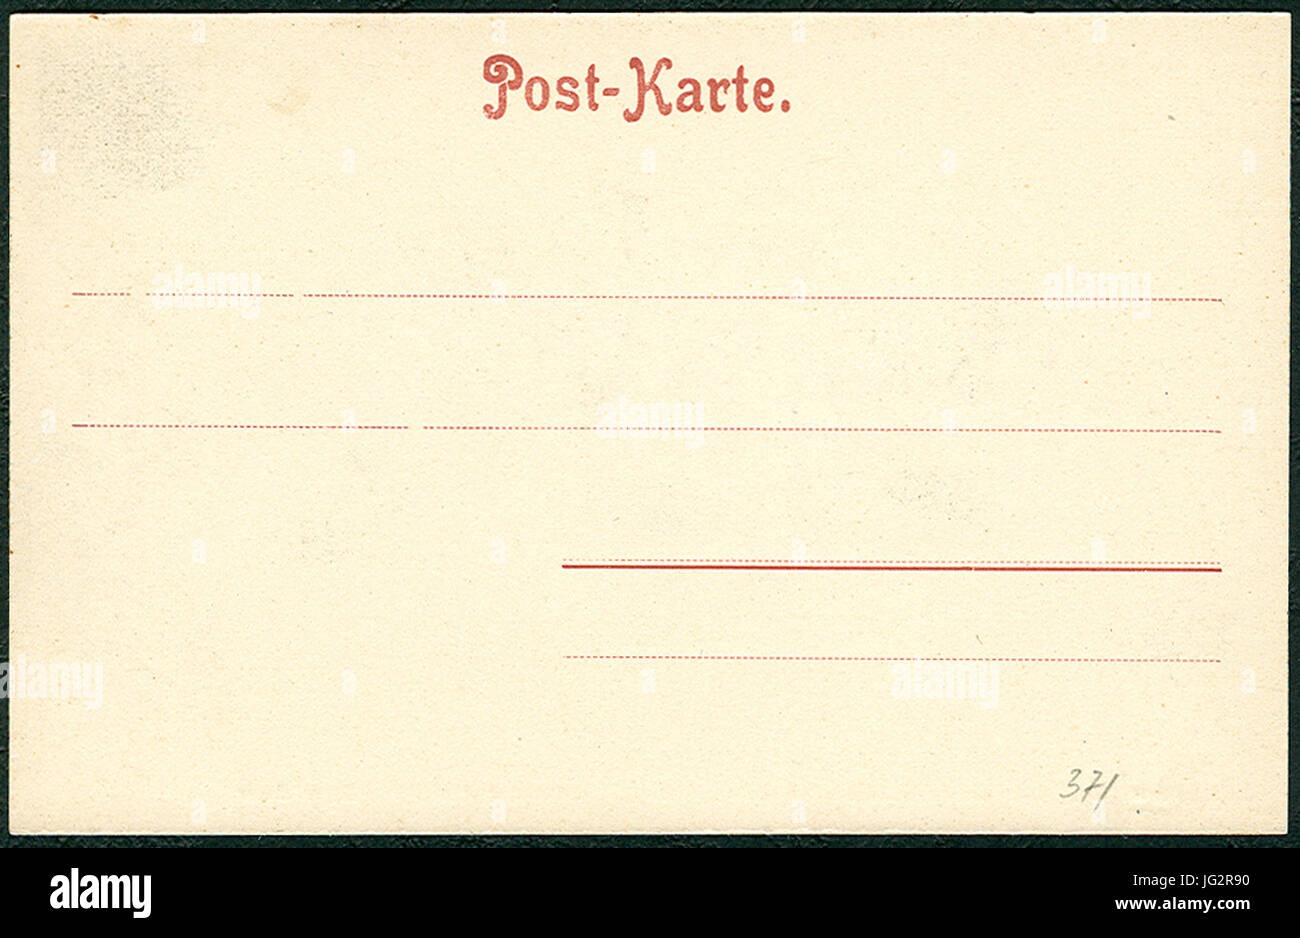 Knackstedt & Näther Stereoskopie 0818 Amburgo.Freihafen, Lagerhäuser. Adressseite der Postkarte Foto Stock